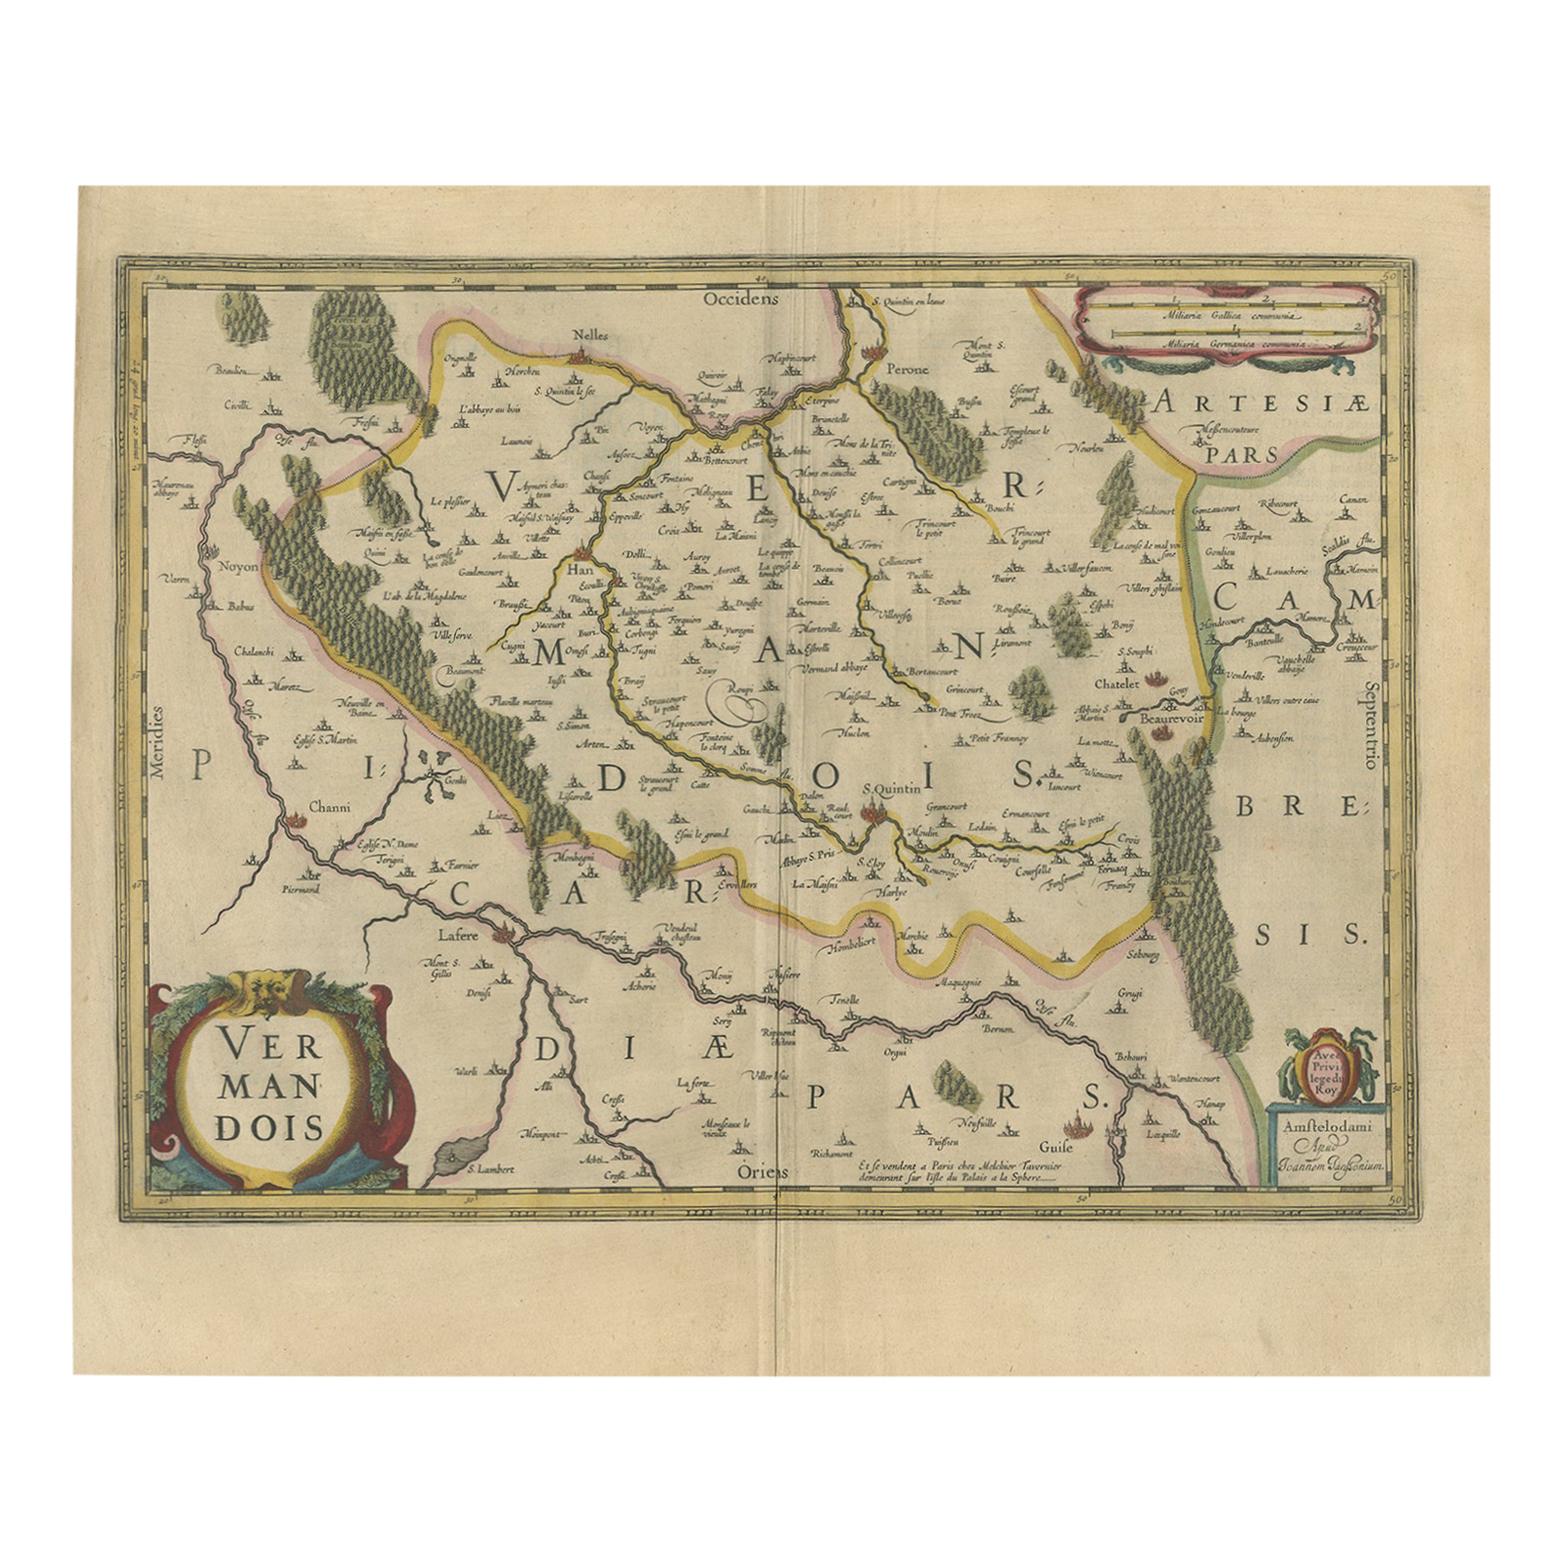 Antique Map of the Vermandois Region by Janssonius, circa 1640